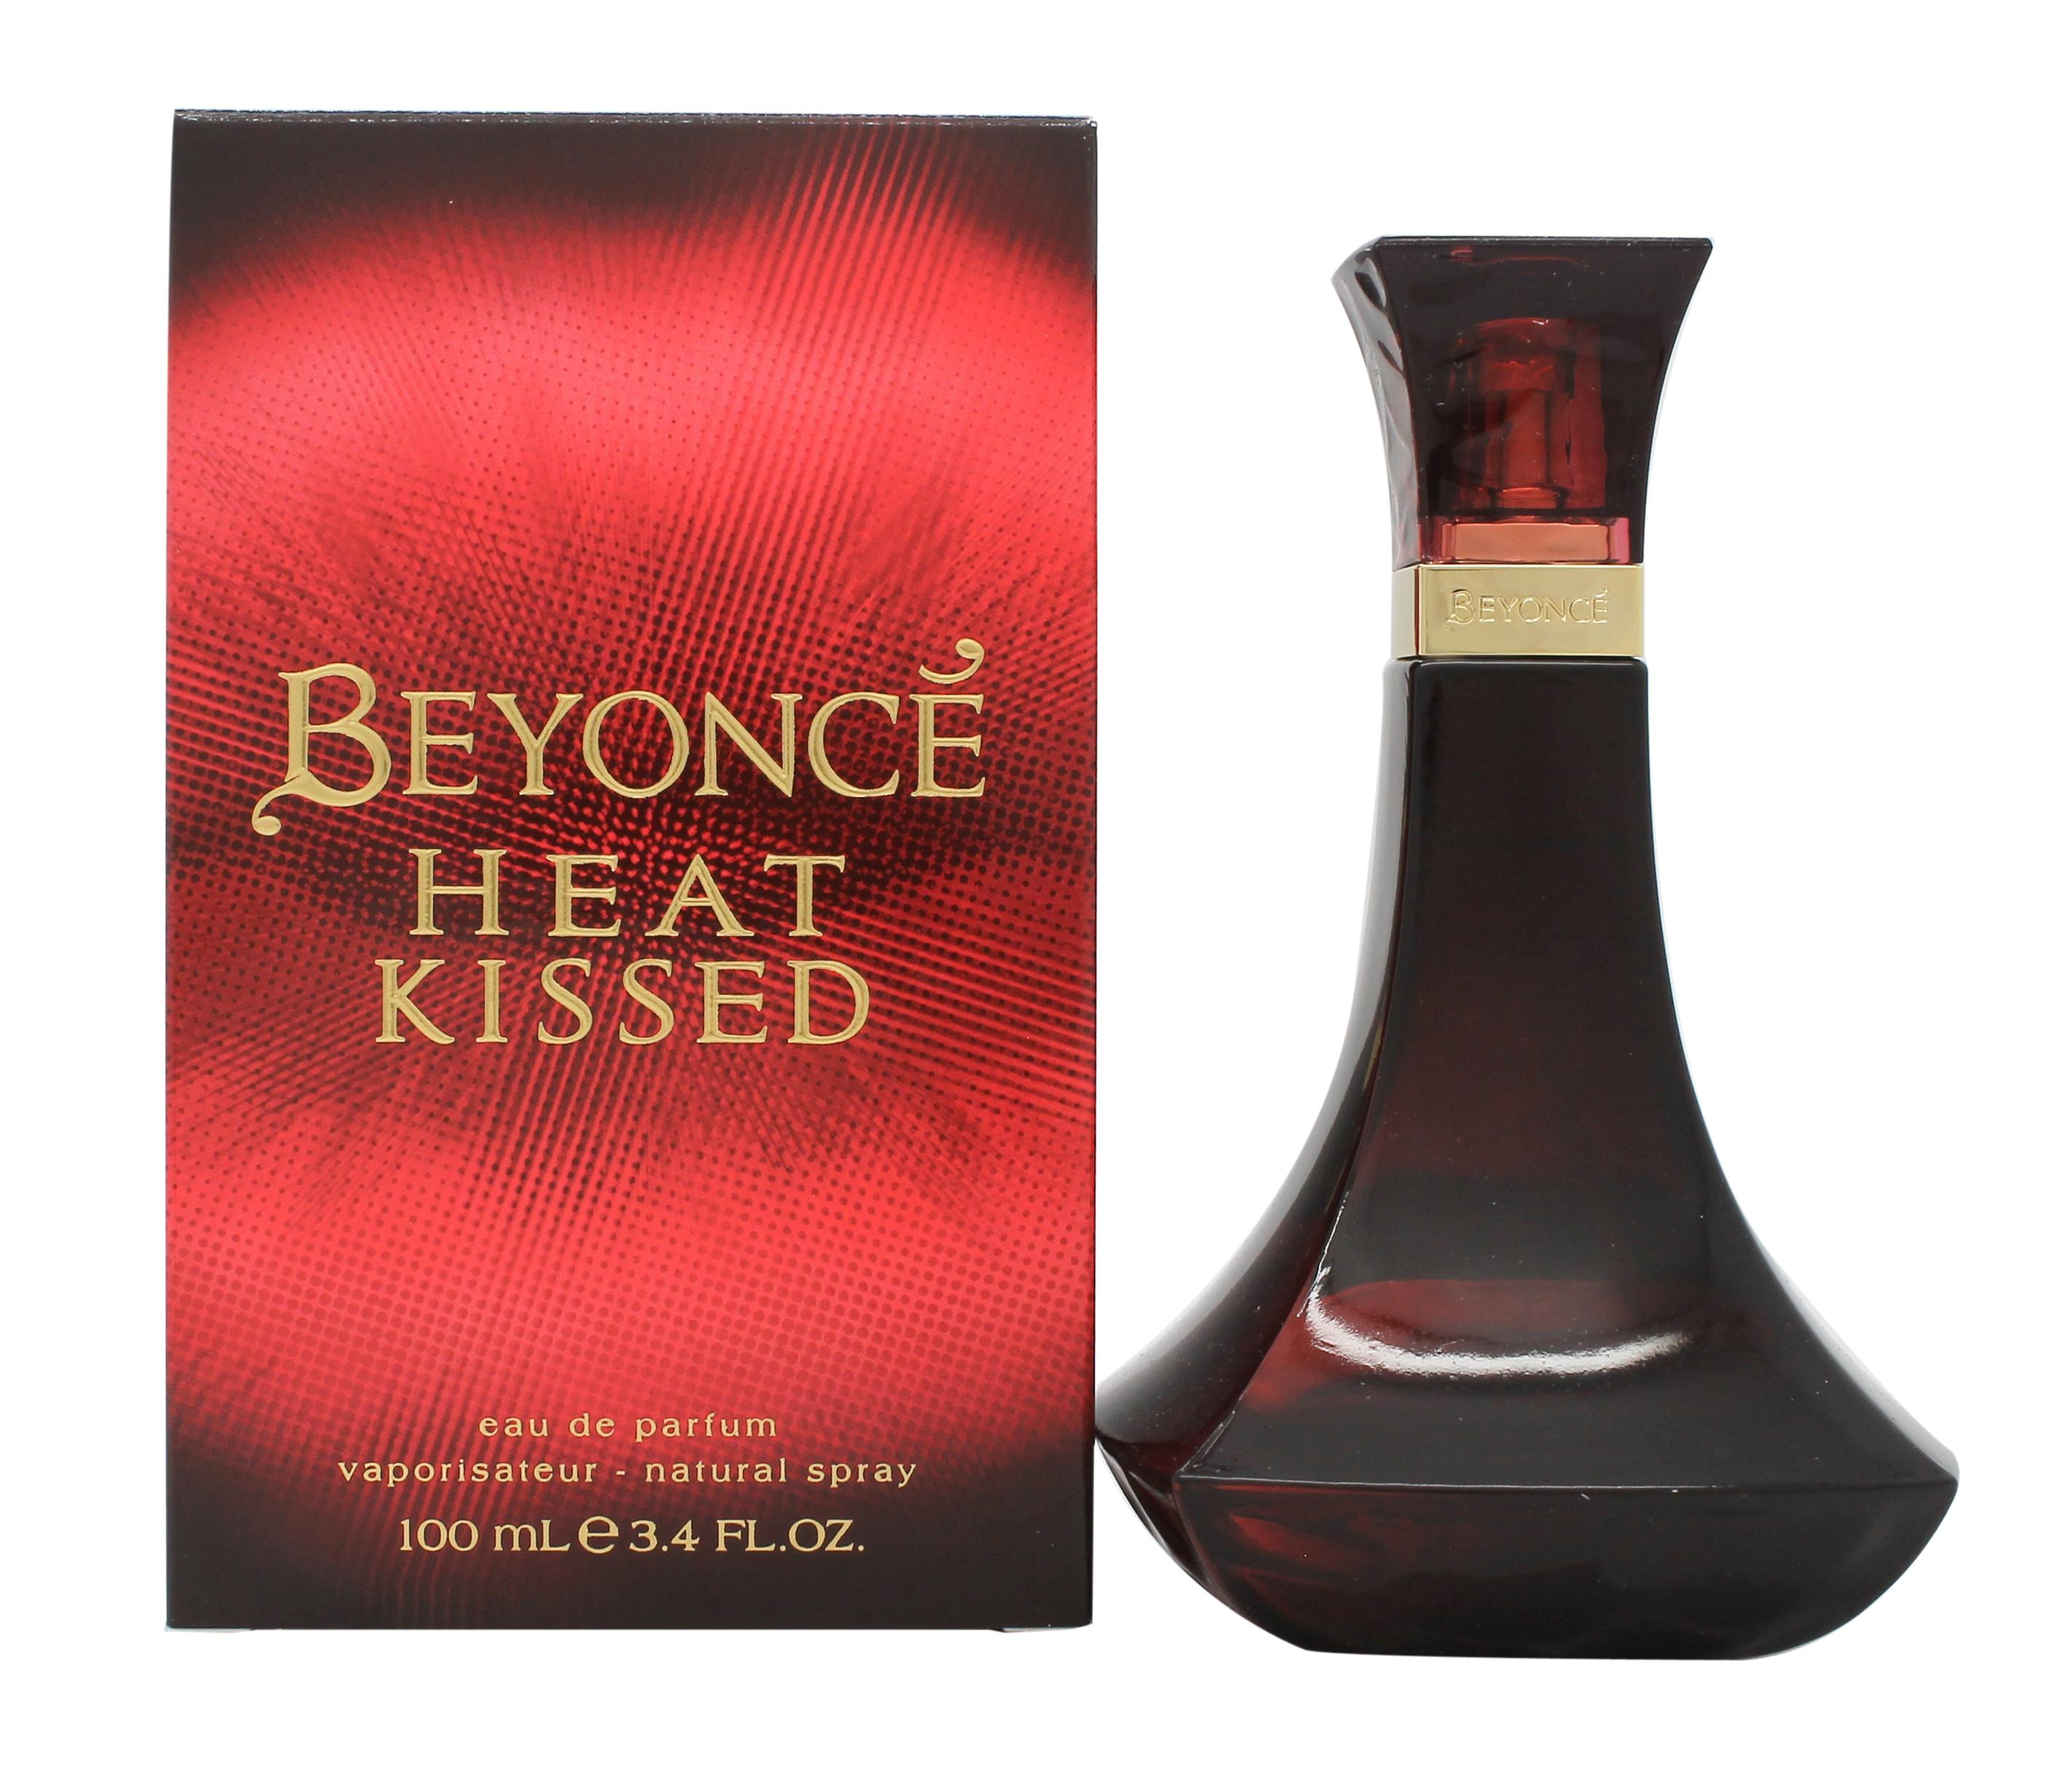 Beyonce Heat Kissed Eau de Parfum 100ml Spray